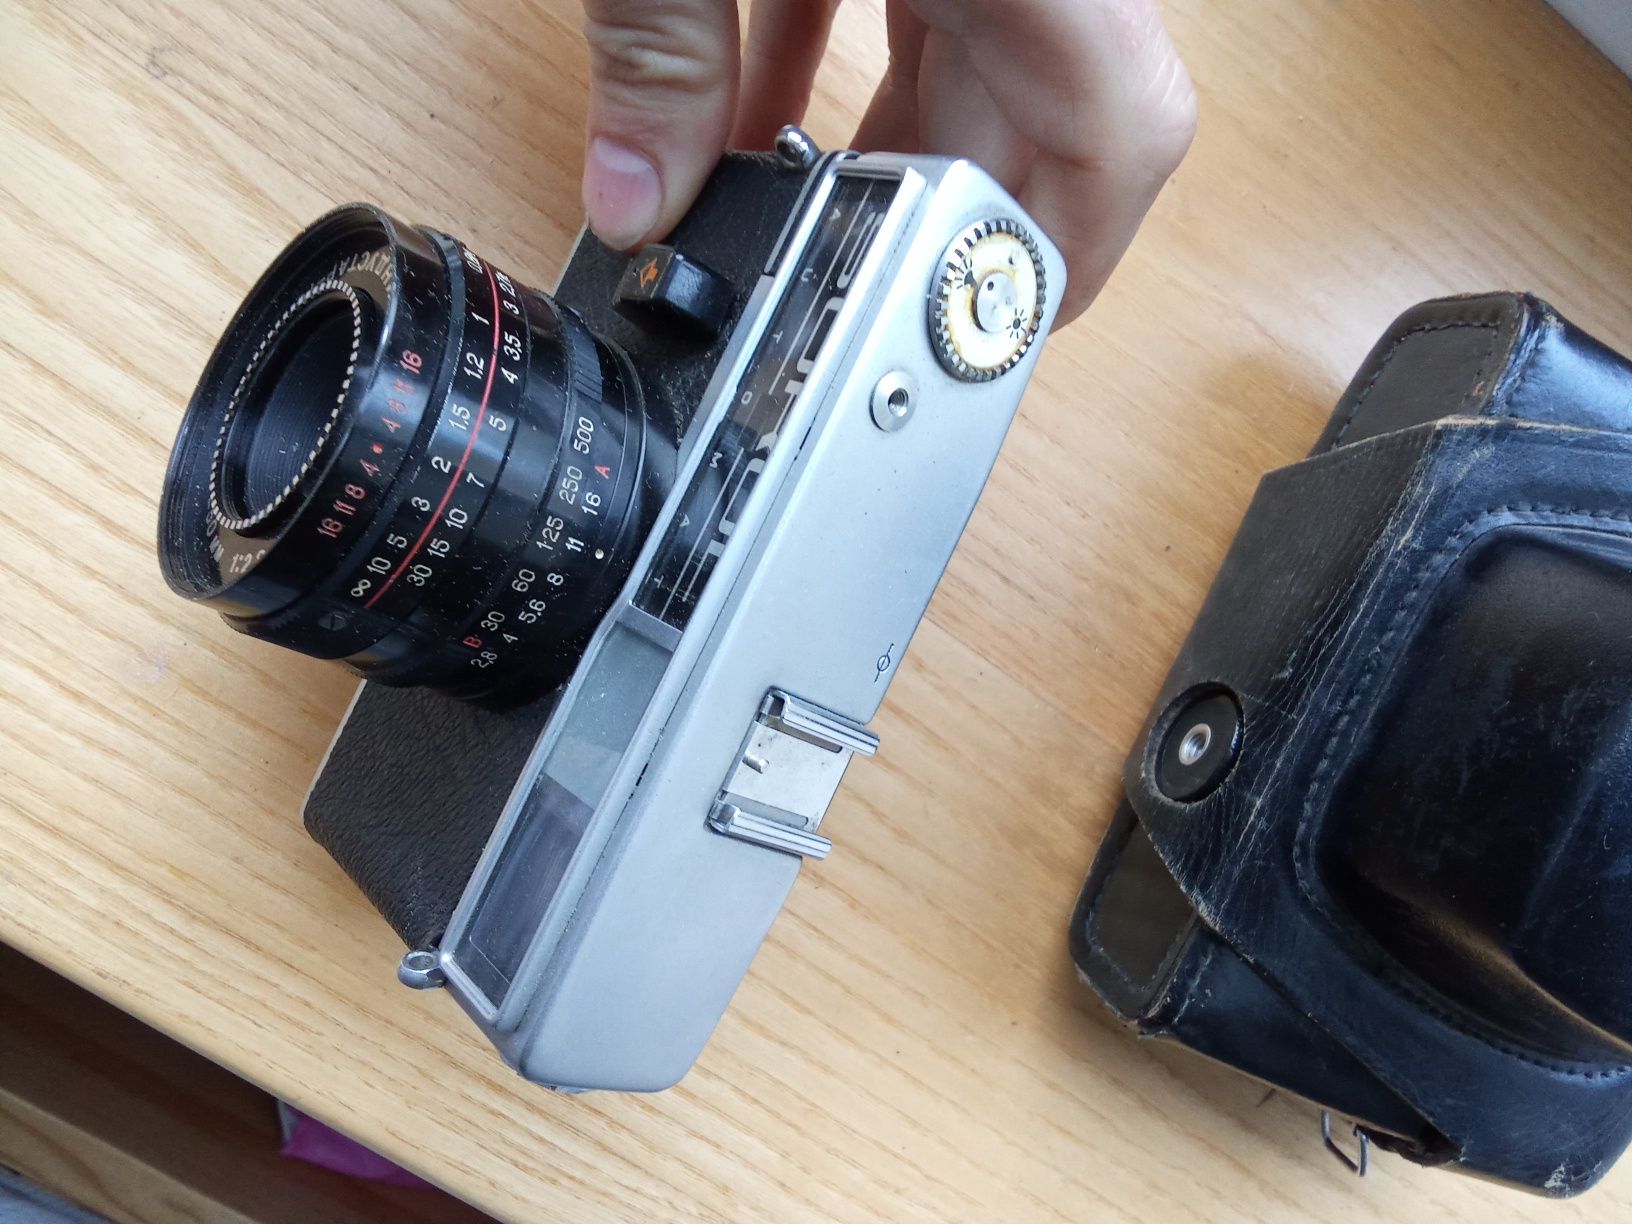 Kamera filmowa  łono sokol Obiektyw undustar 70 ZSRR

Kamera filmowa